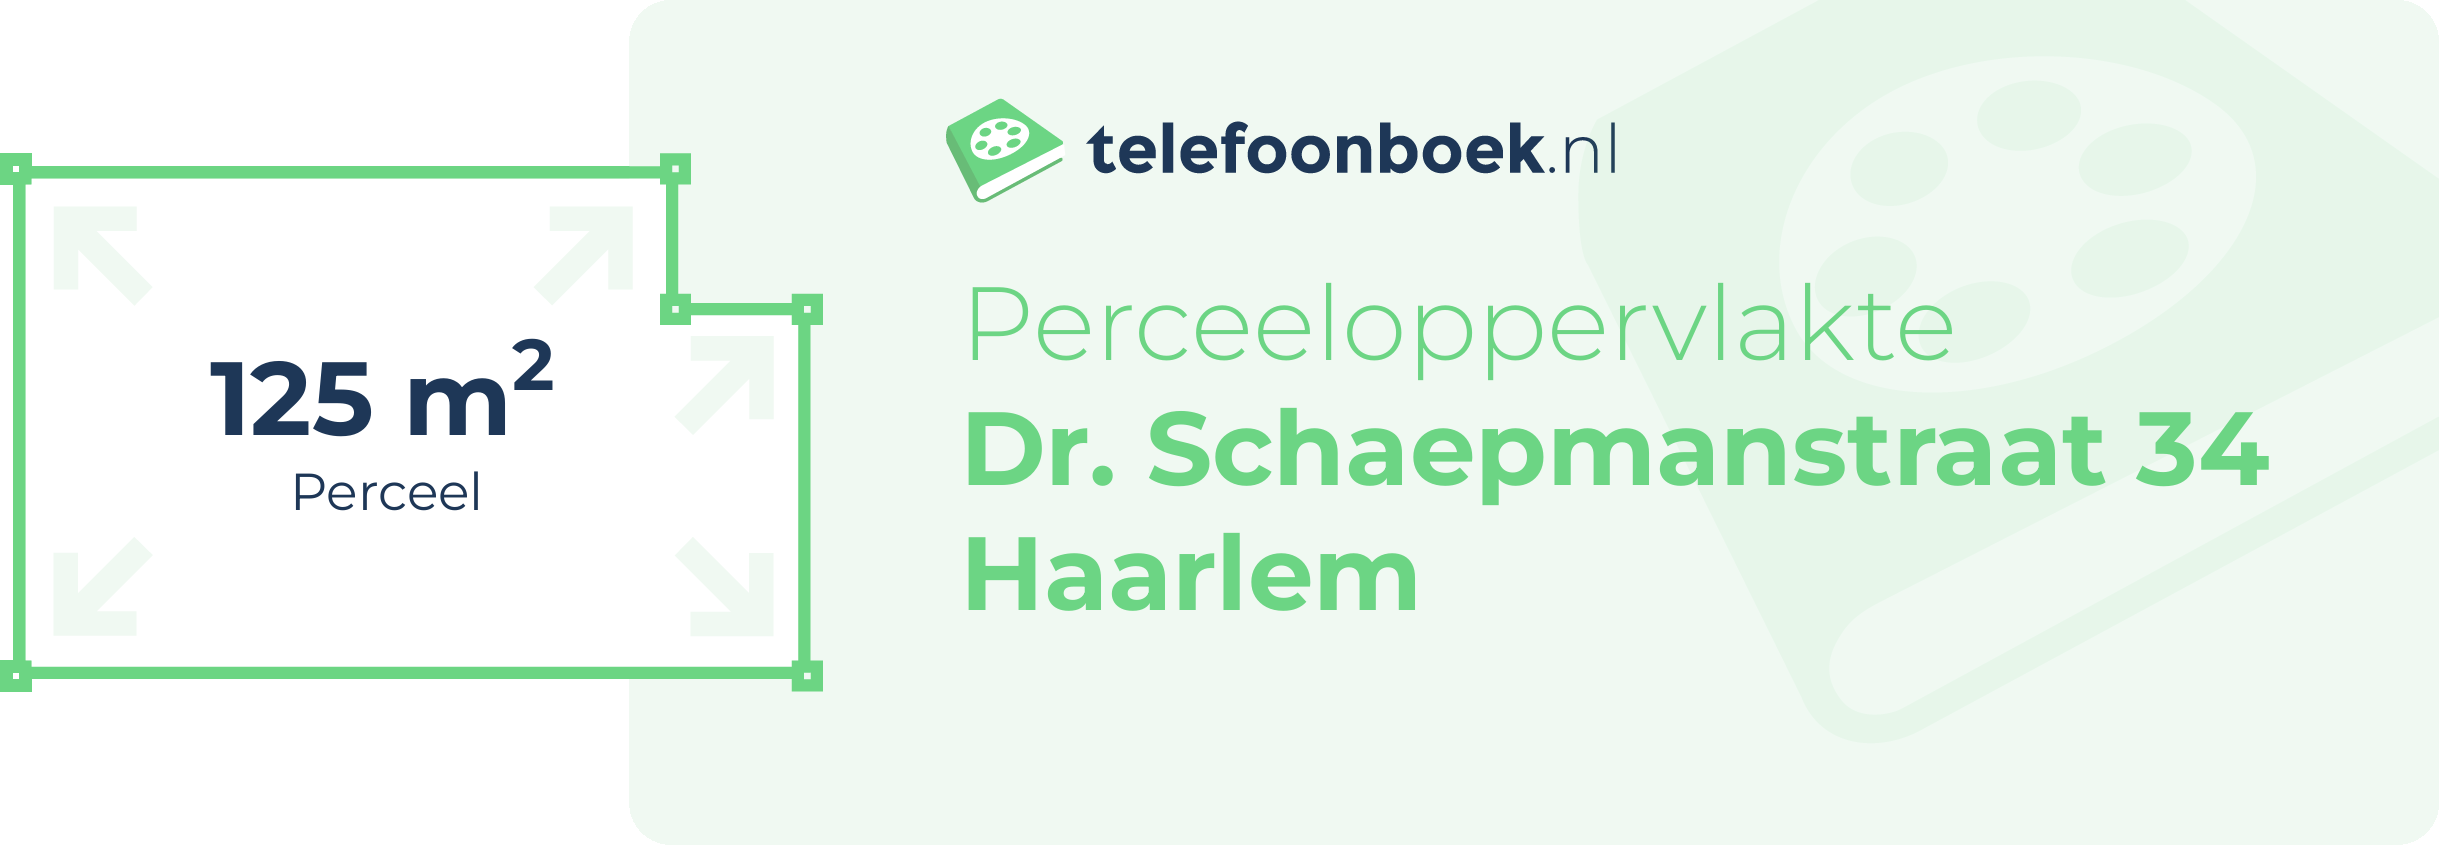 Perceeloppervlakte Dr. Schaepmanstraat 34 Haarlem